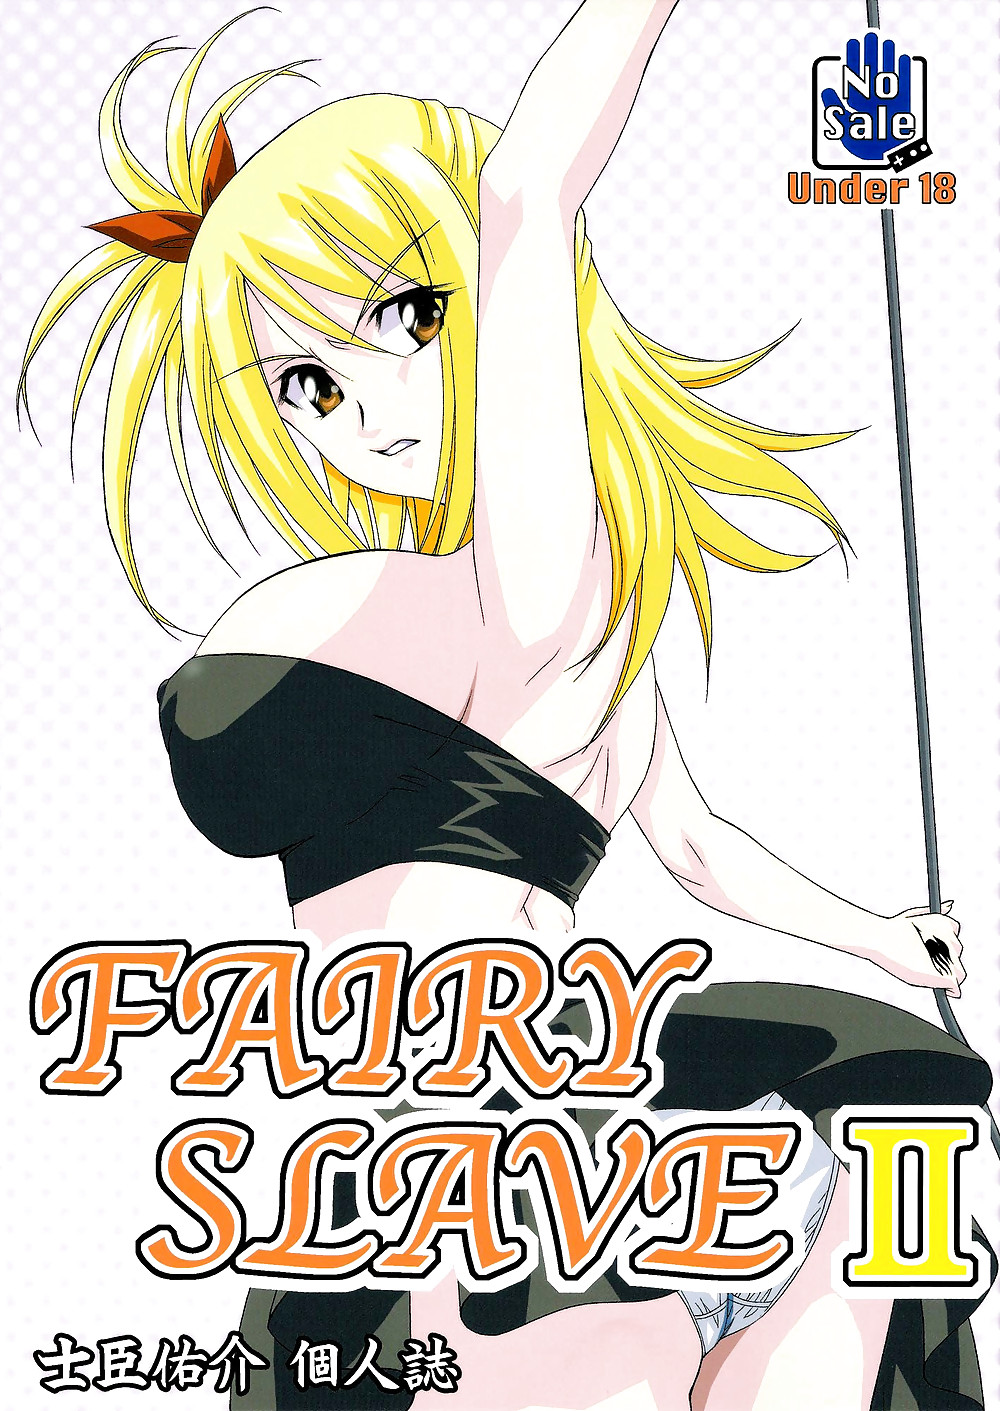 Fairy Tail - Fairy Slave 2 #15683641